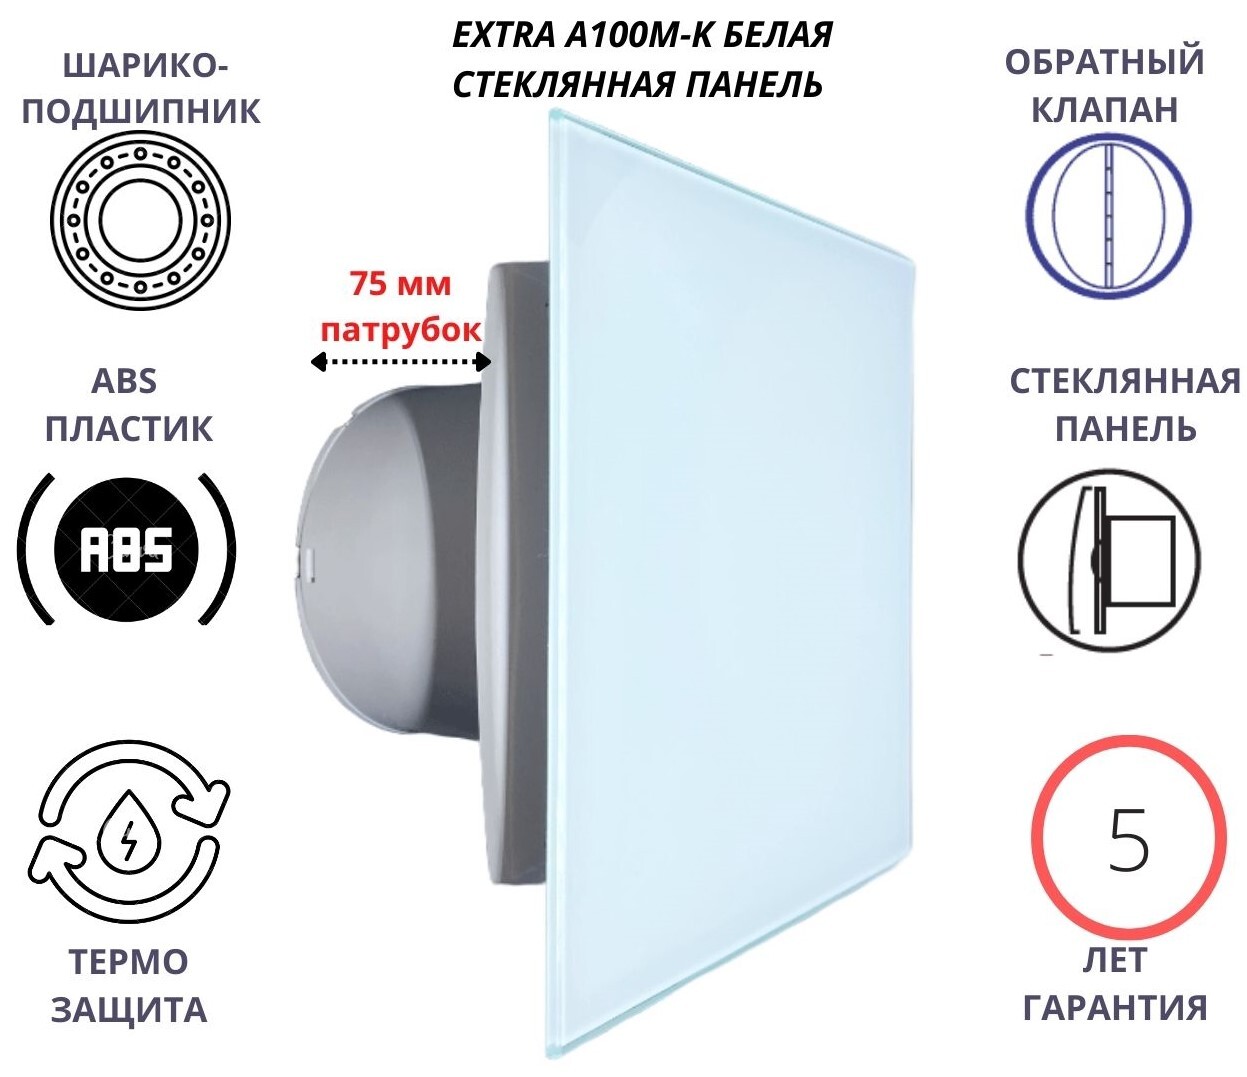 Вентилятор MTG d100мм со стеклянной белой панелью и с обратным клапаном A100М-K, Сербия вентилятор с таймером d100мм со стеклянной белой панелью extra a100м t сербия